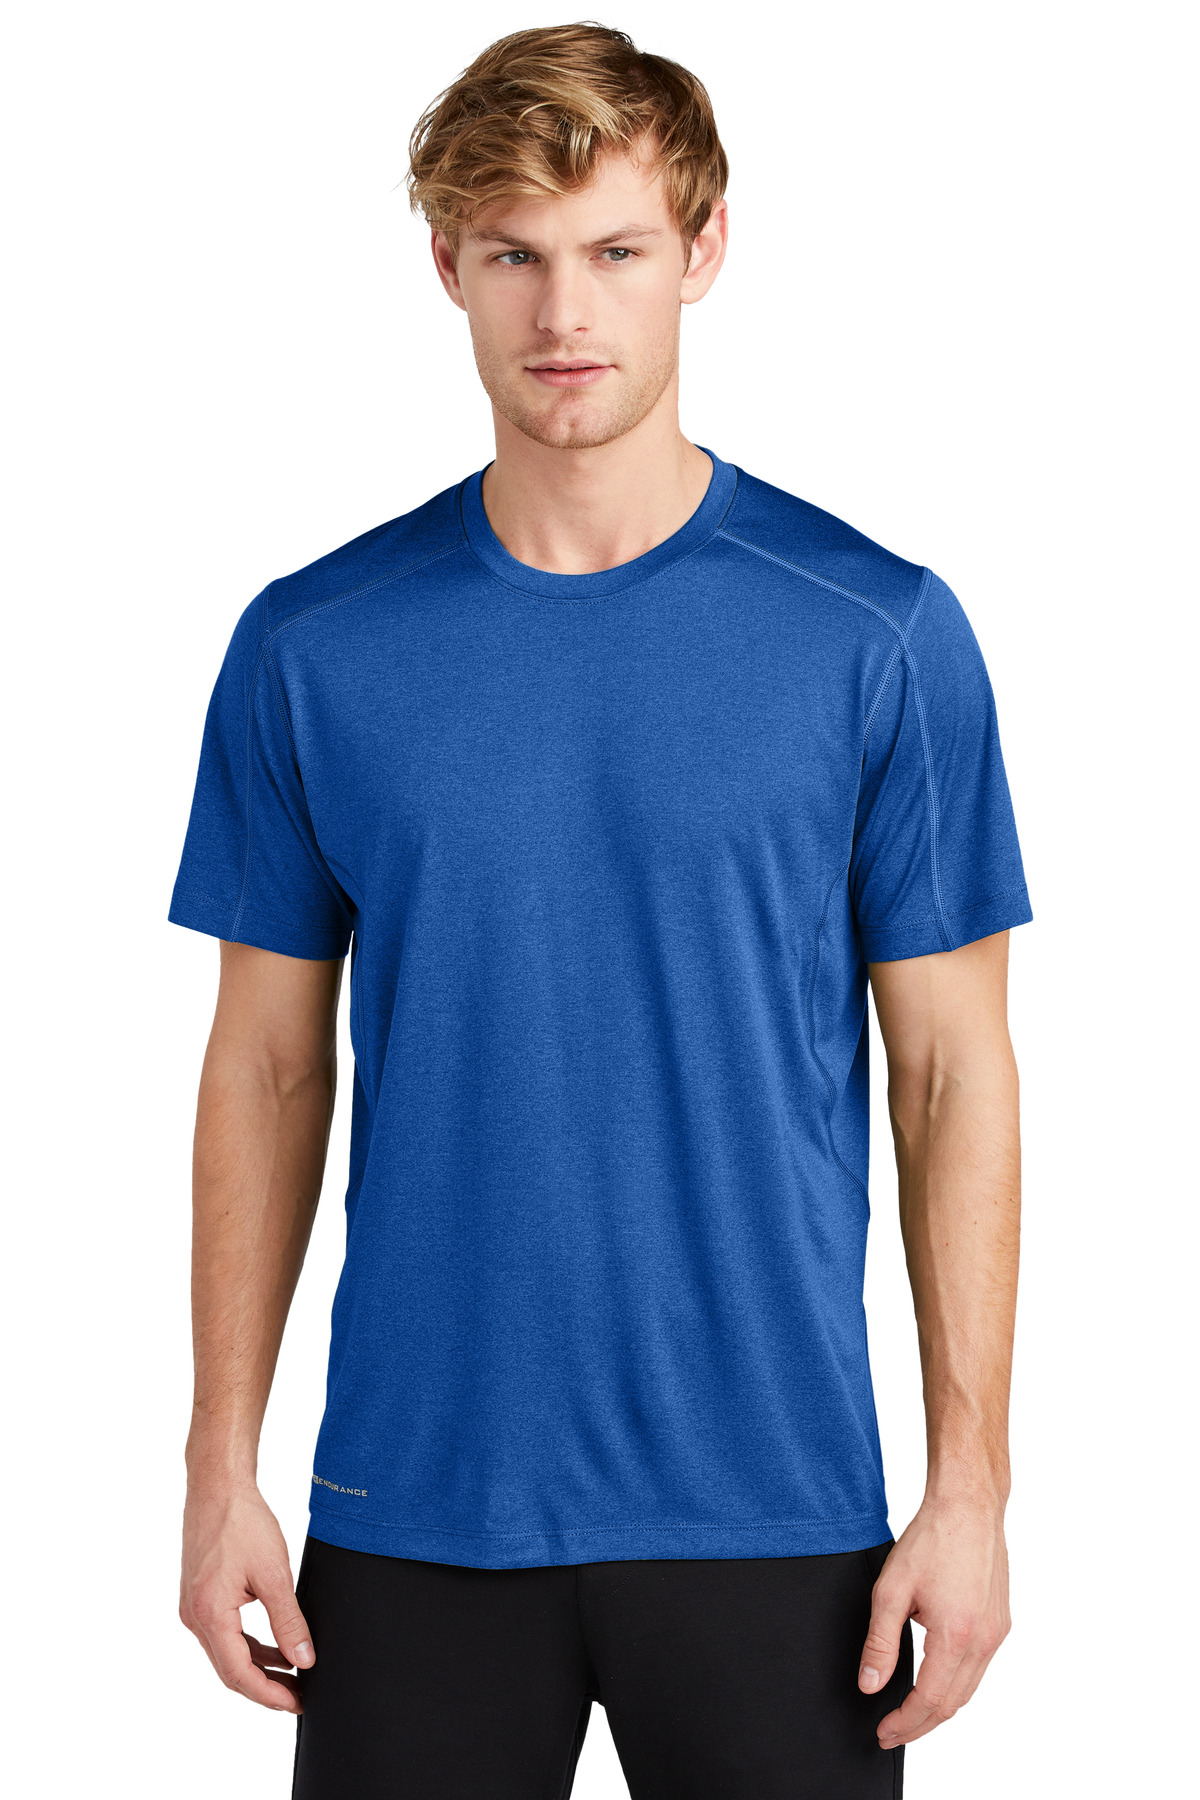 OGIO Activewear T-Shirts for Hospitality ® ENDURANCE Pulse Crew.-OGIO